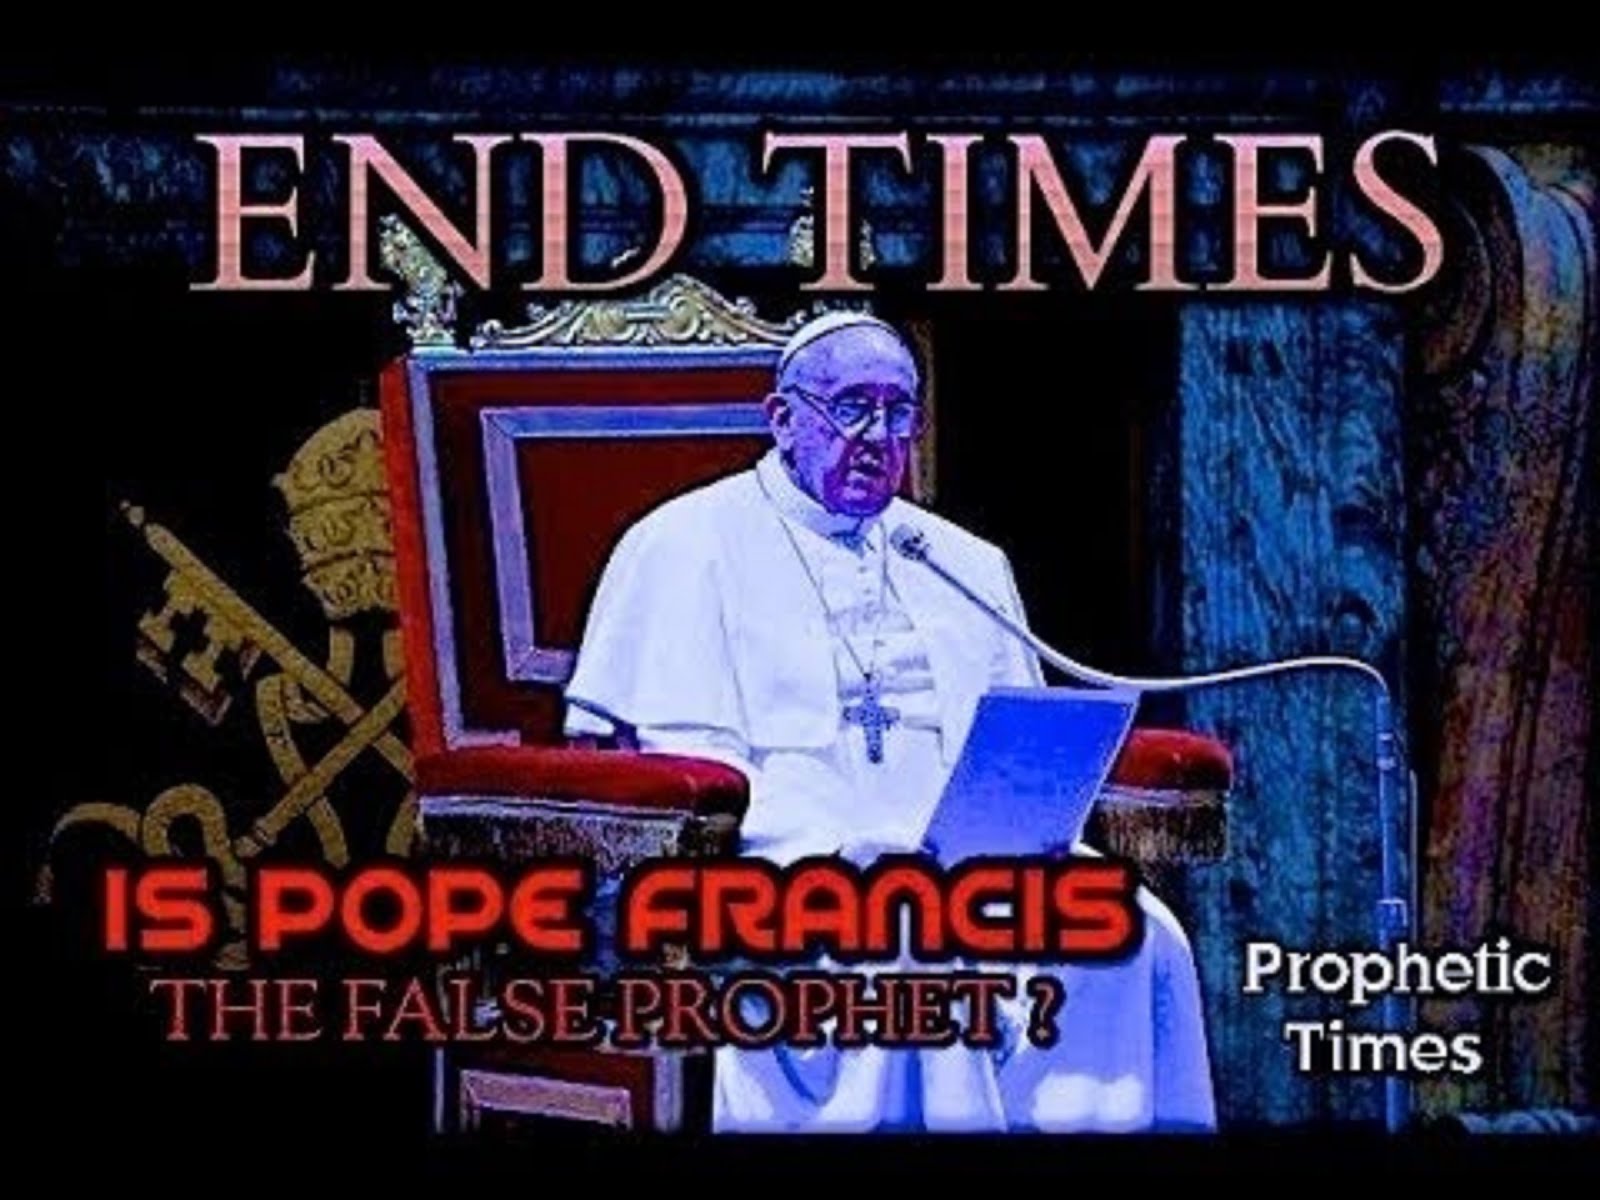 POPE FRANCIS = FALSE PROPHET